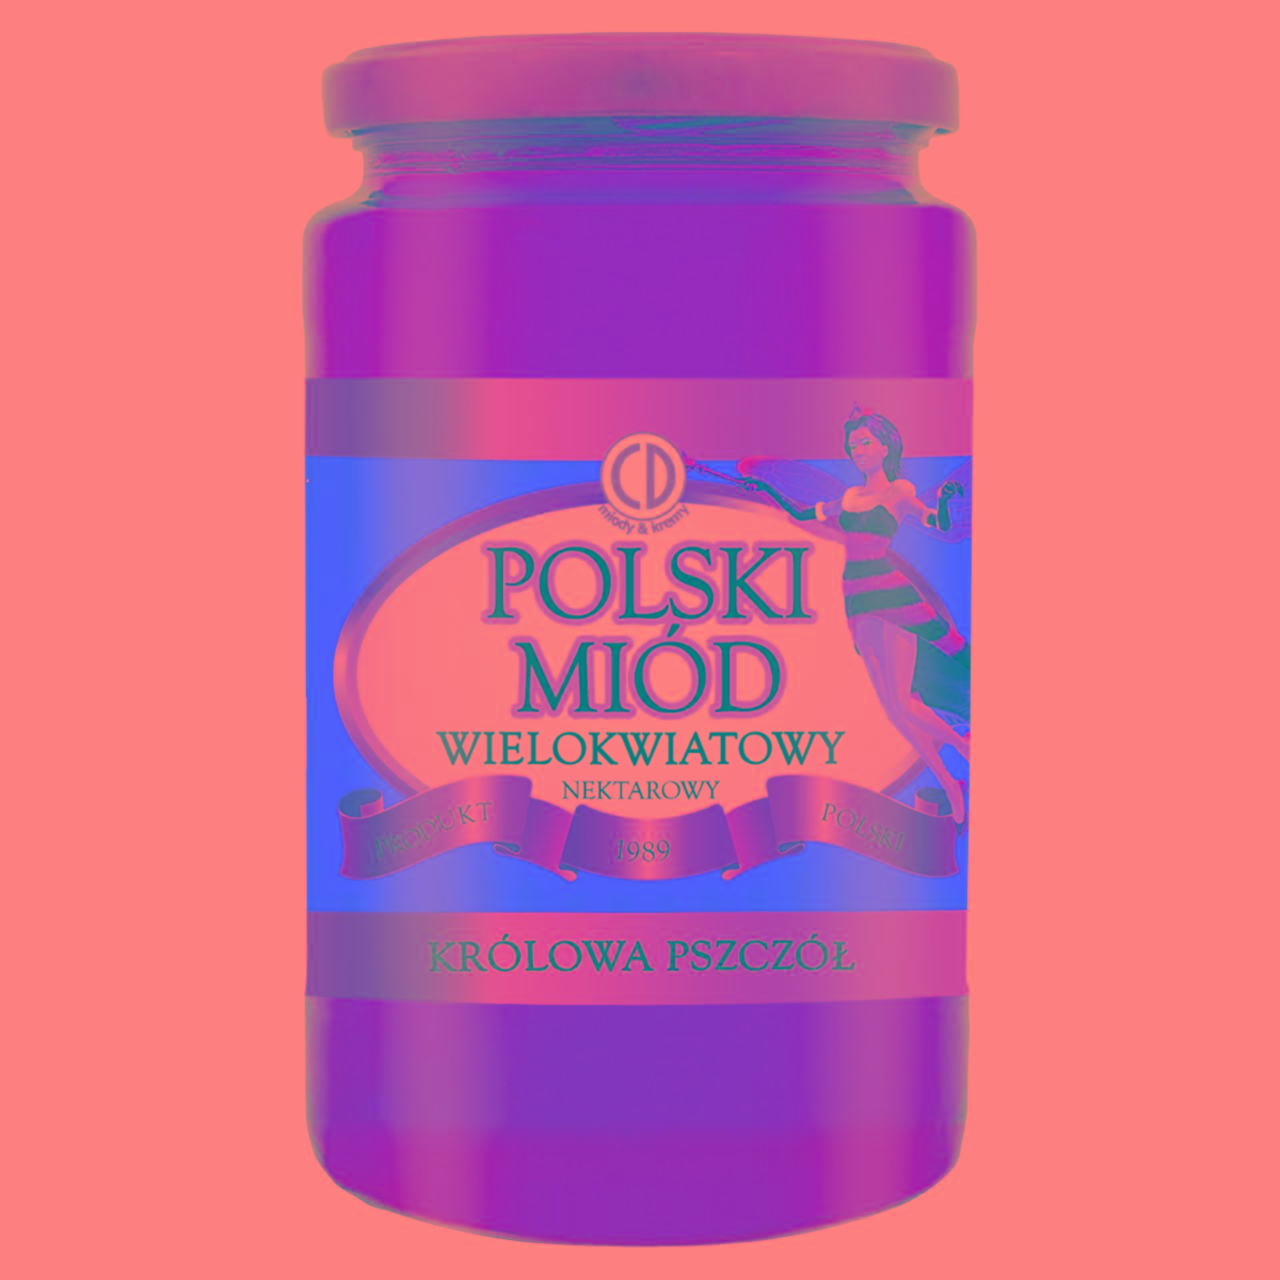 Zdjęcia - Królowa Pszczół Polski miód wielokwiatowy nektarowy 1 kg